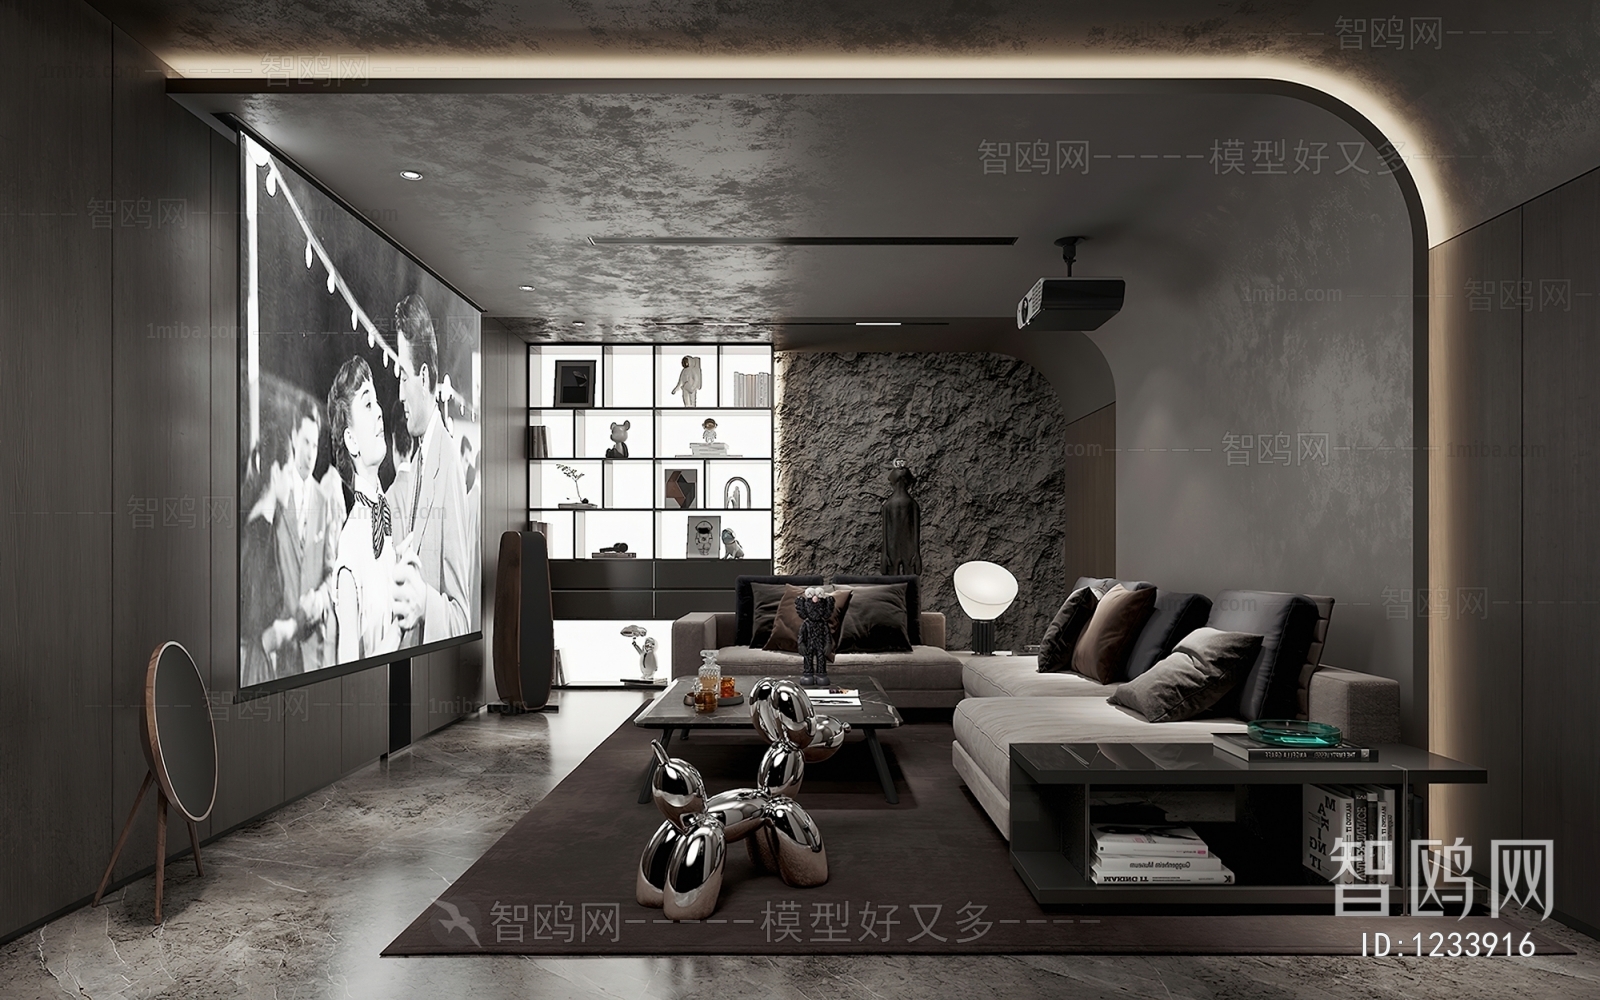 Wabi-sabi Style Audiovisual Room